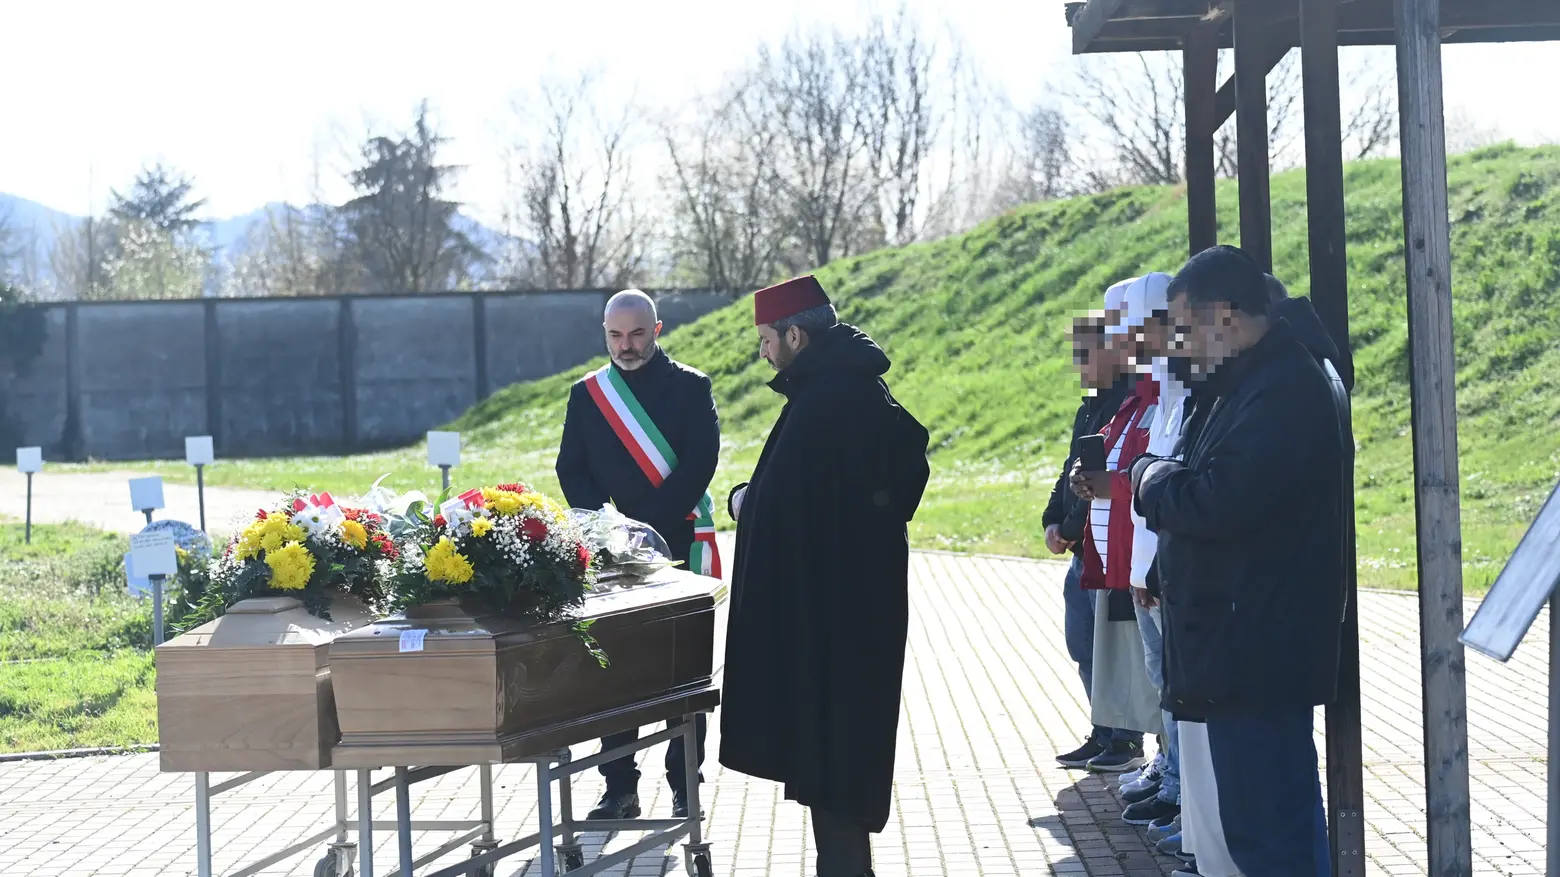 Il funerale delle due vittime del naufragio si svolgeranno a Borgo Panigale